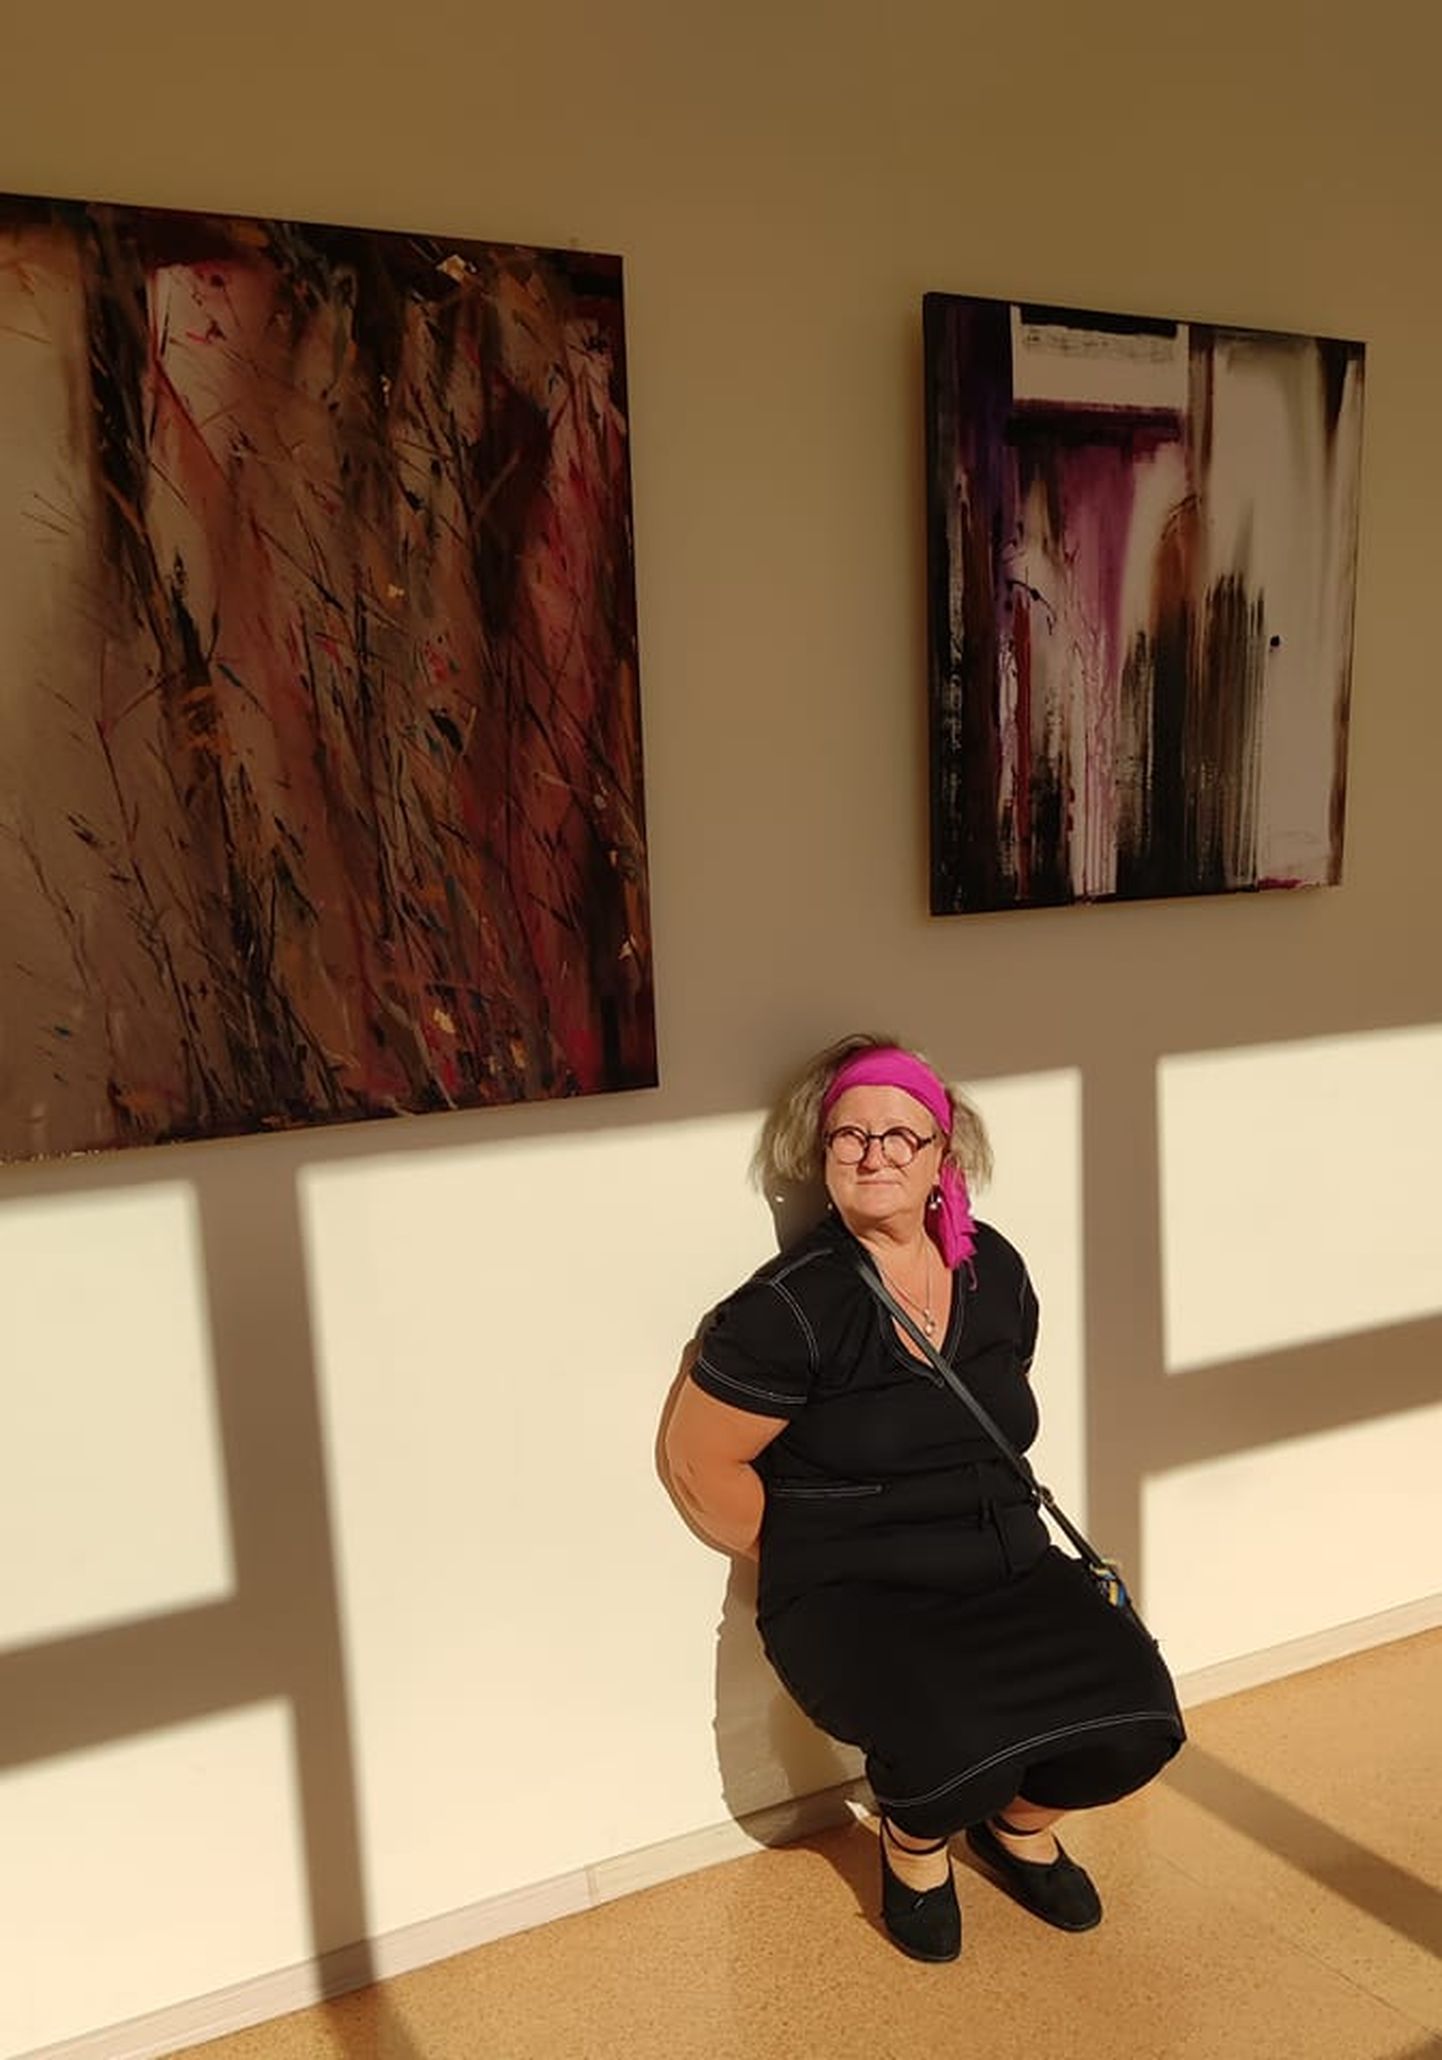 Paide 3. keskkooli IV lennust Jane Siimso-Merivoo tõi näitusele oma maalid ja päikeselised varjud.